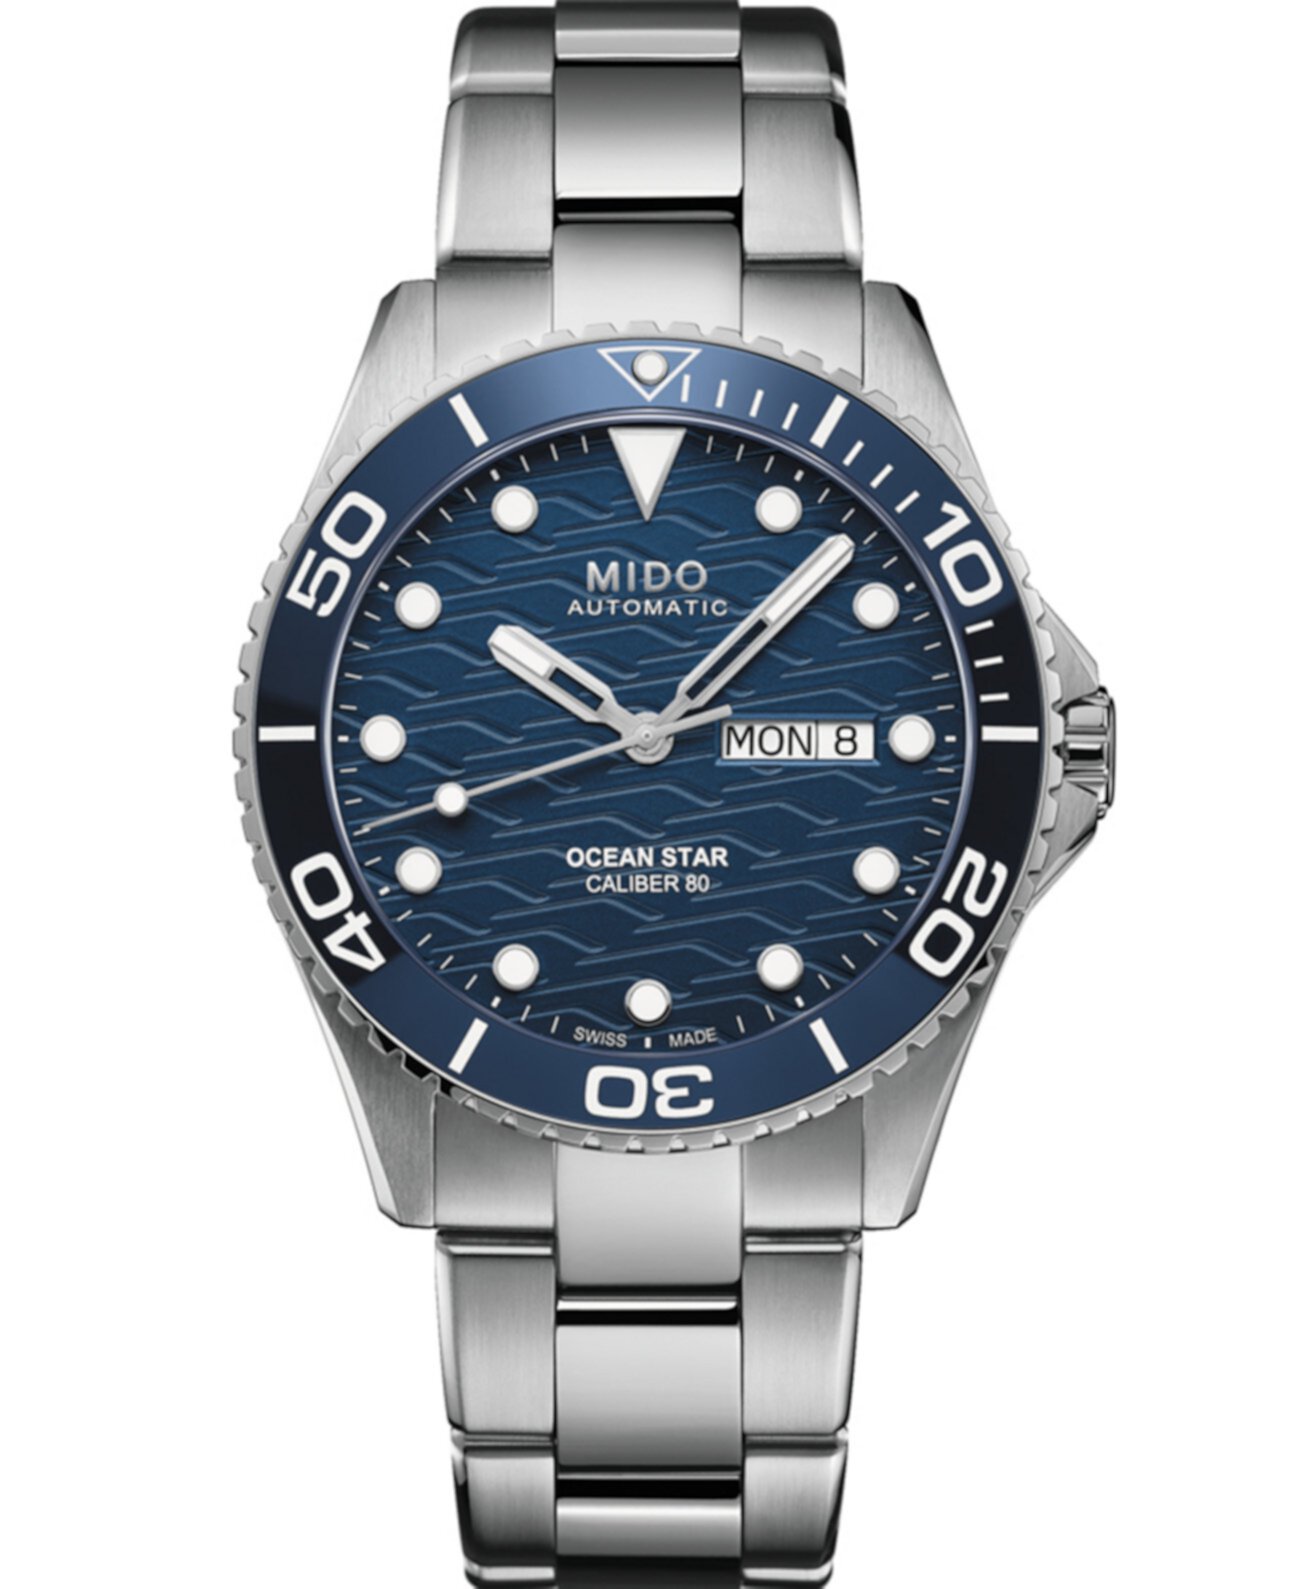 Мужские швейцарские автоматические часы Ocean Star с браслетом из нержавеющей стали, 43 мм MIDO